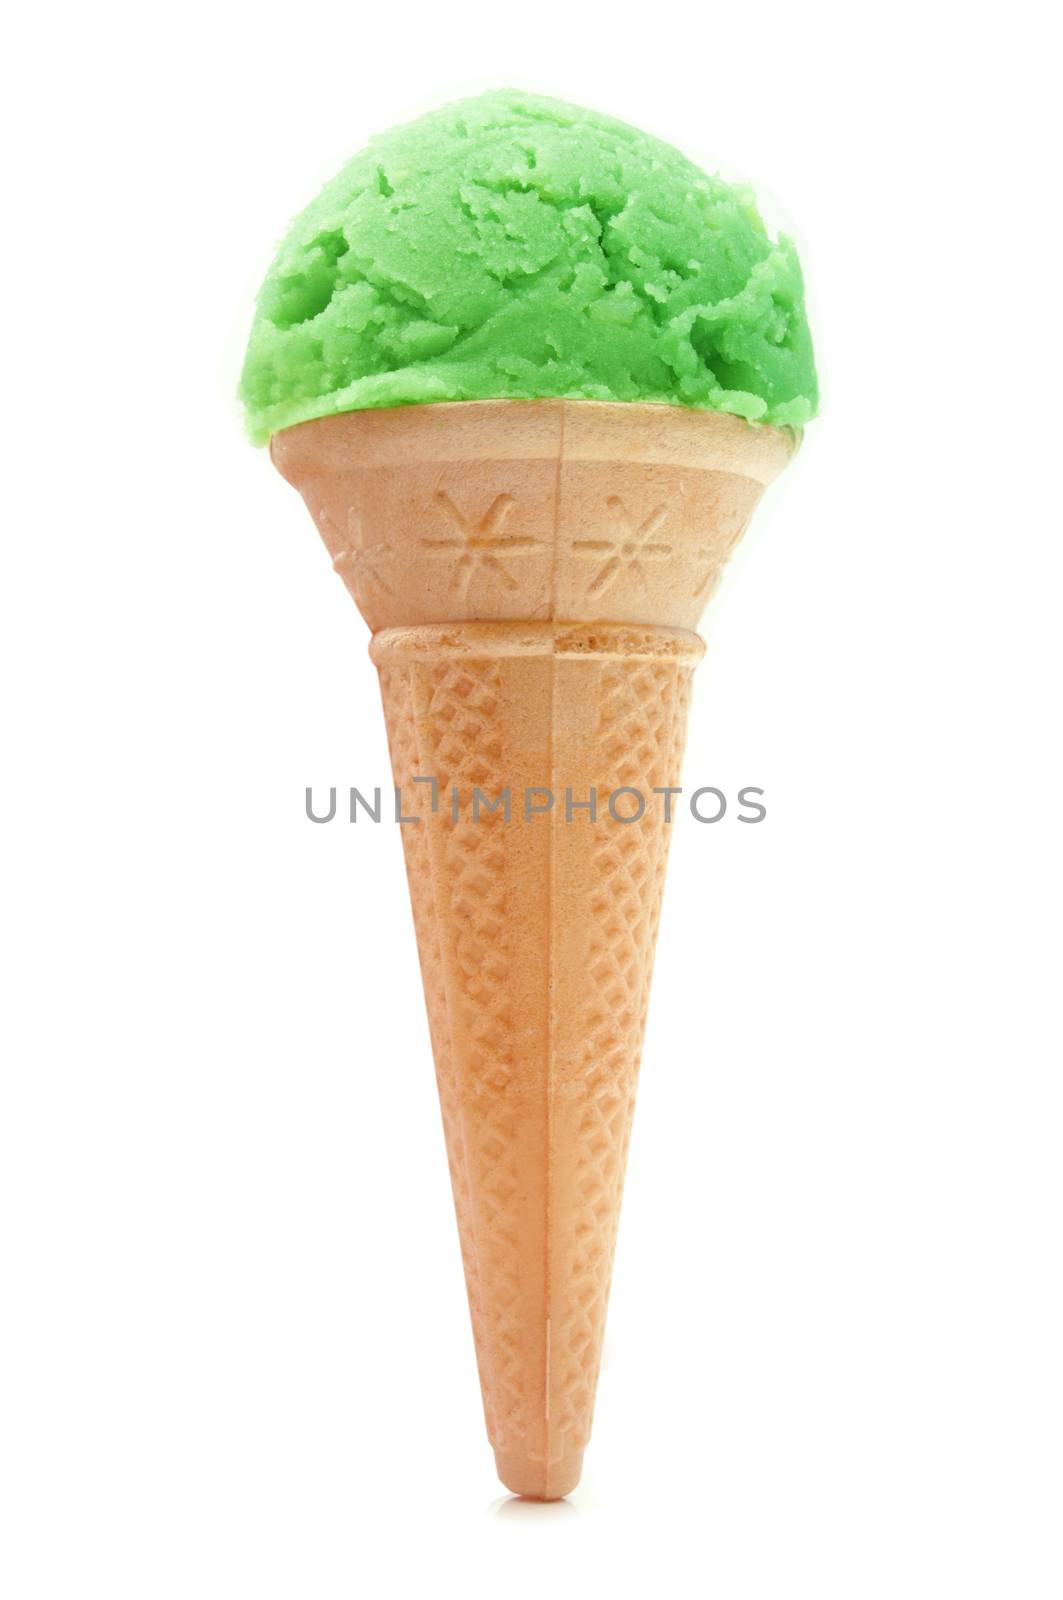 Ice cream cone by unikpix